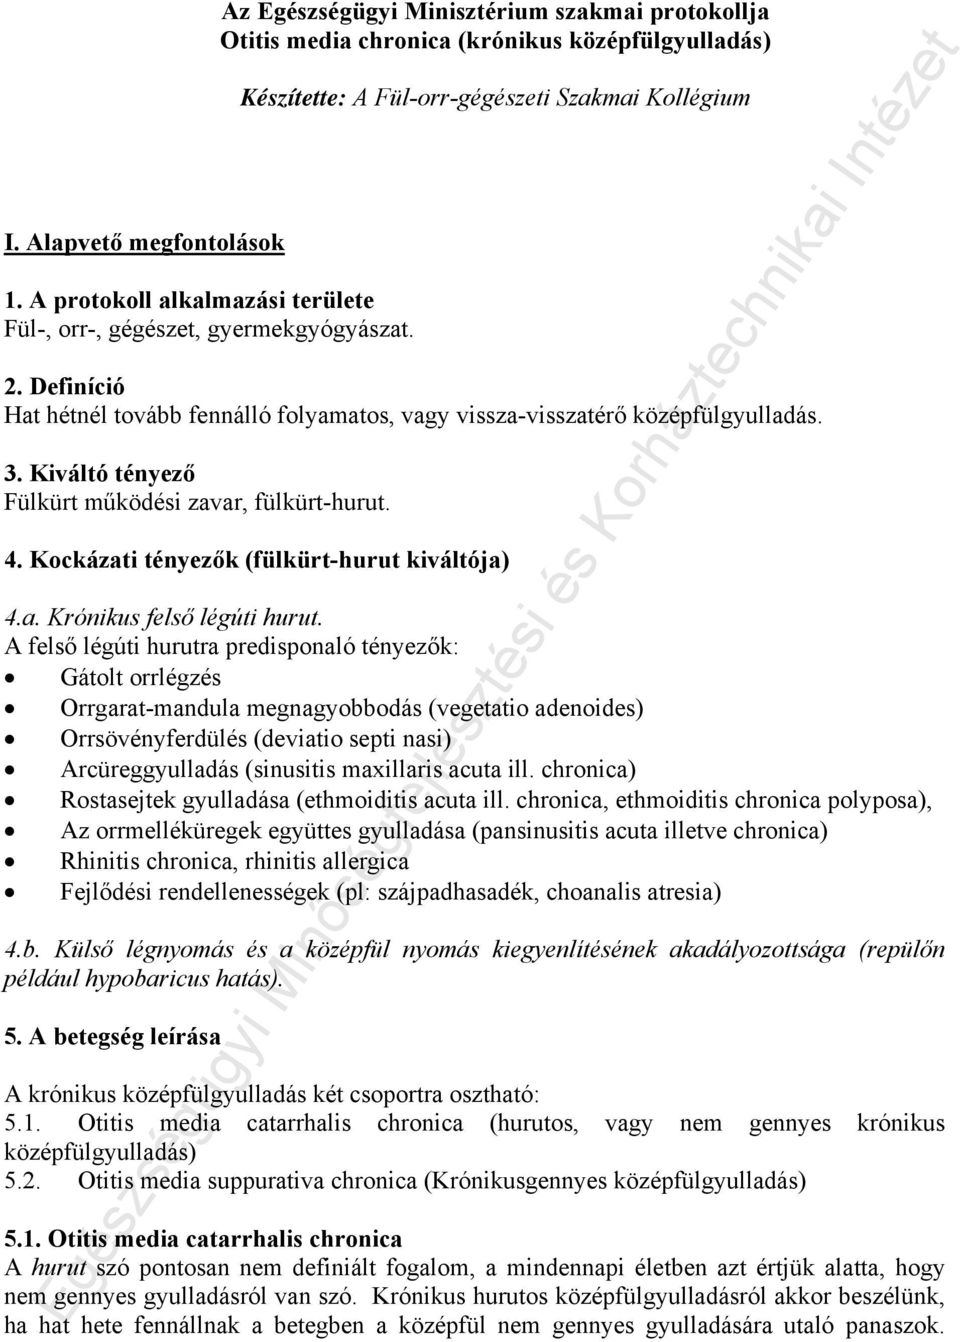 Leletek értékelése :: Dr. Szendei Katalin - InforMed Orvosi és Életmód portál :: szívbetegség